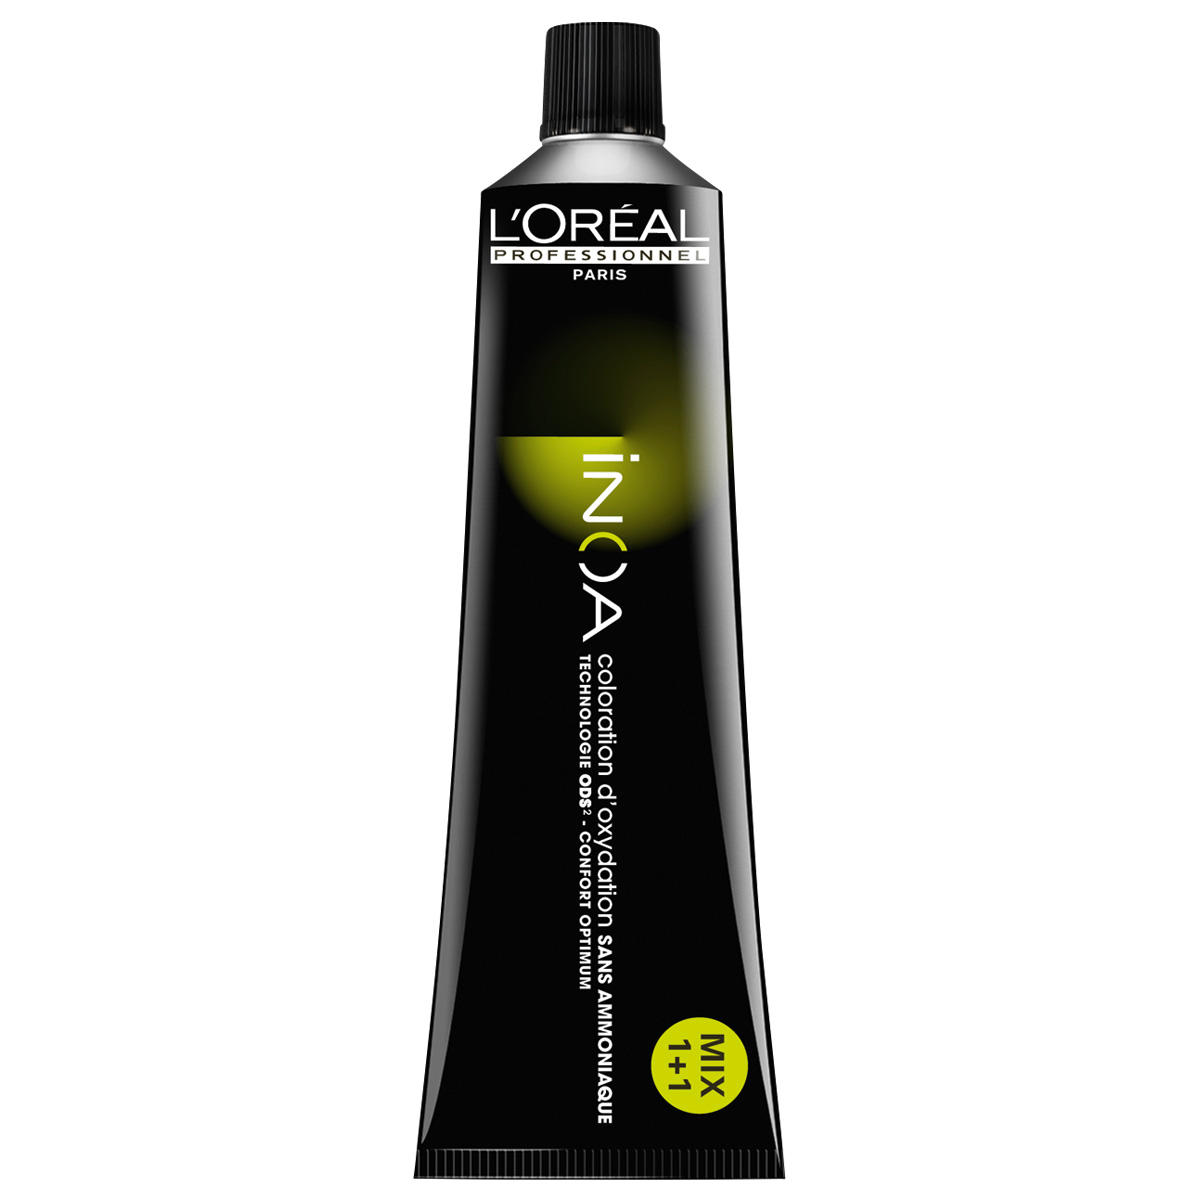 L'Oréal Professionnel Paris Coloration 2 Marrone molto scuro, tubo da 60 ml